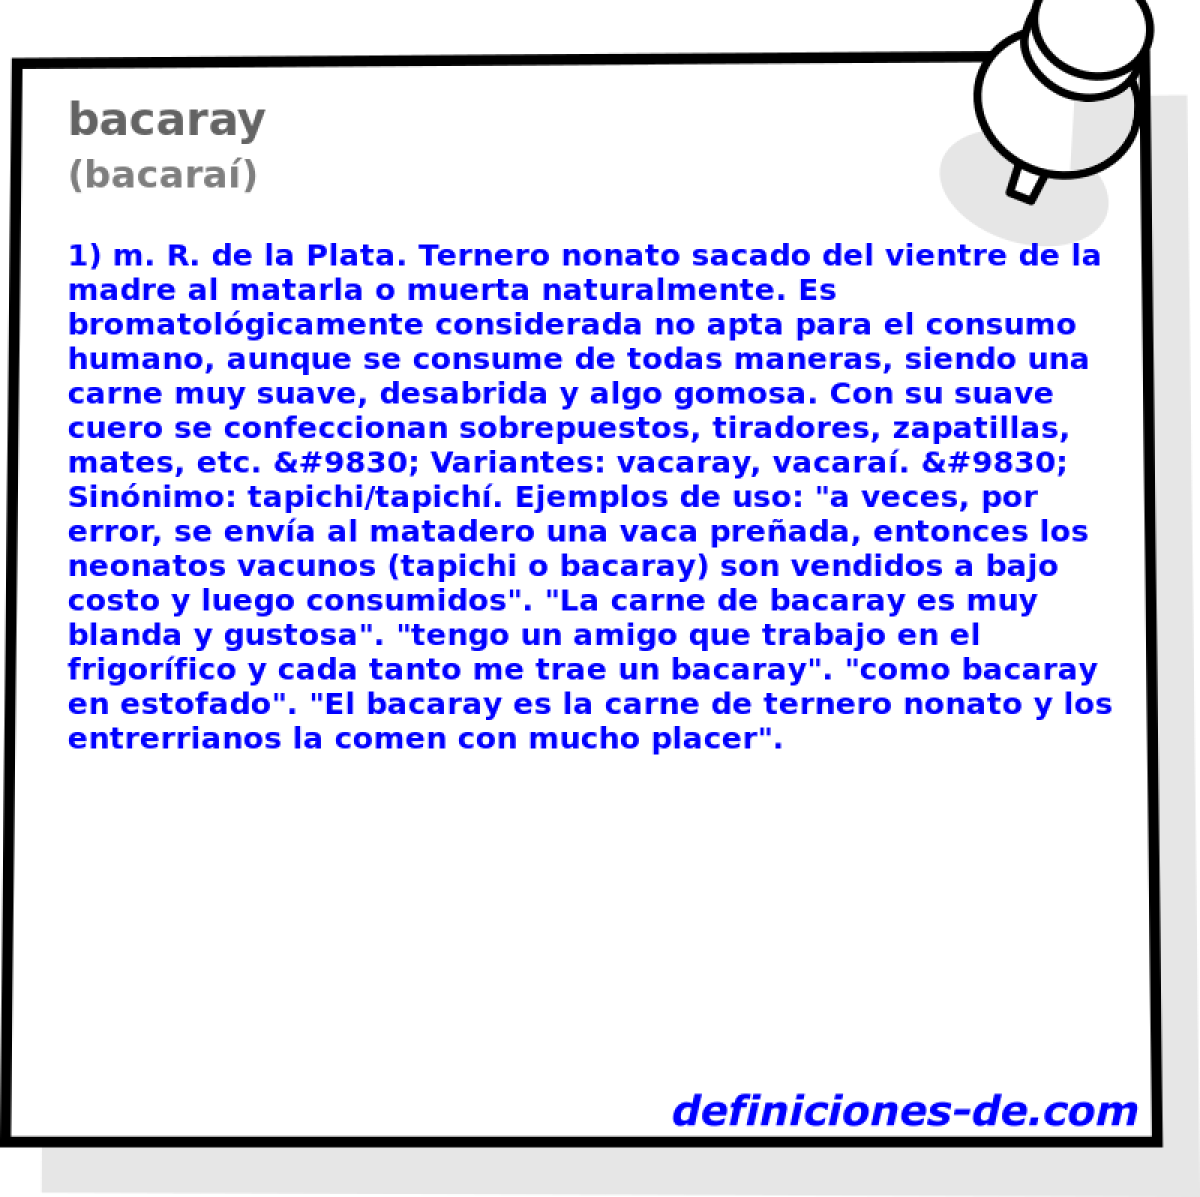 bacaray (bacara)